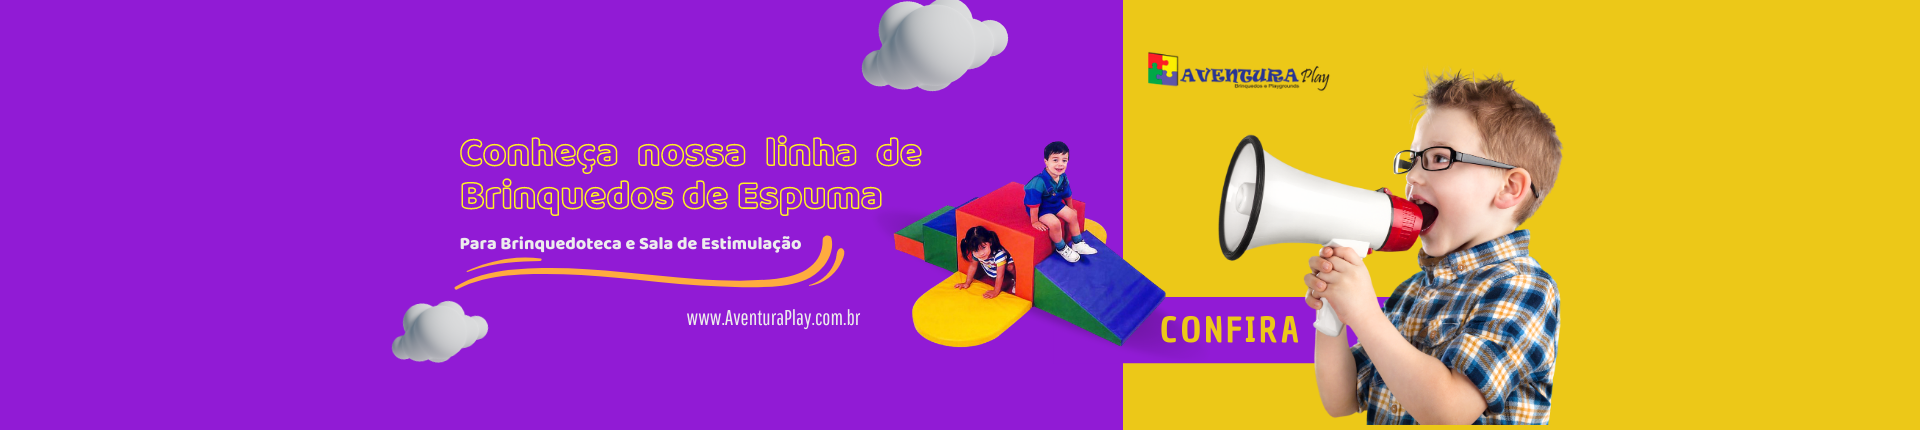 Banner Brinquedos de Espuma AventuraPlay